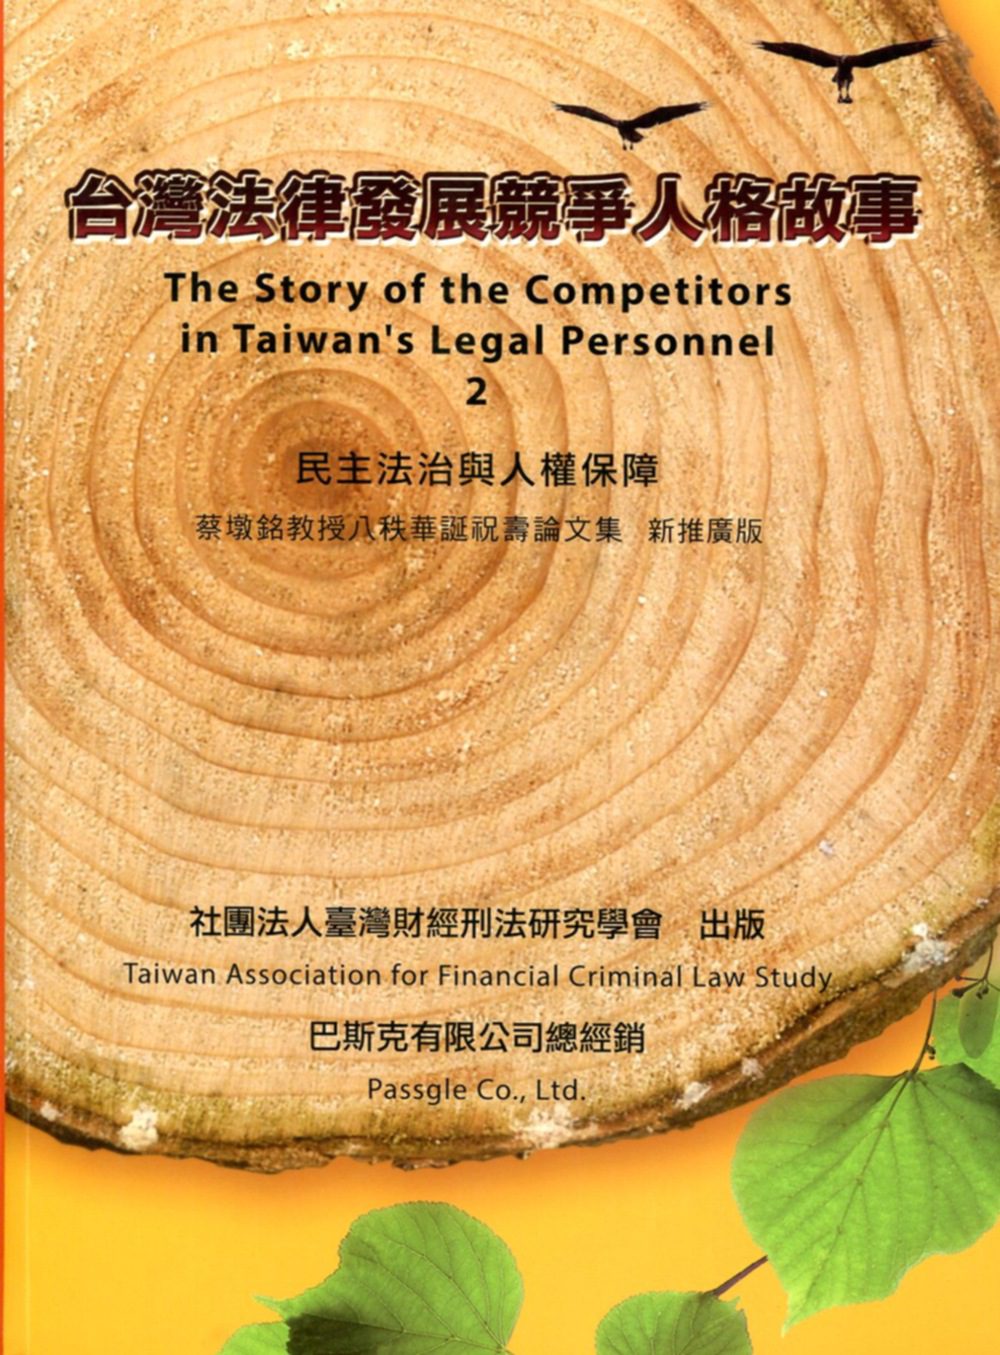 臺灣法律發展競爭人格故事